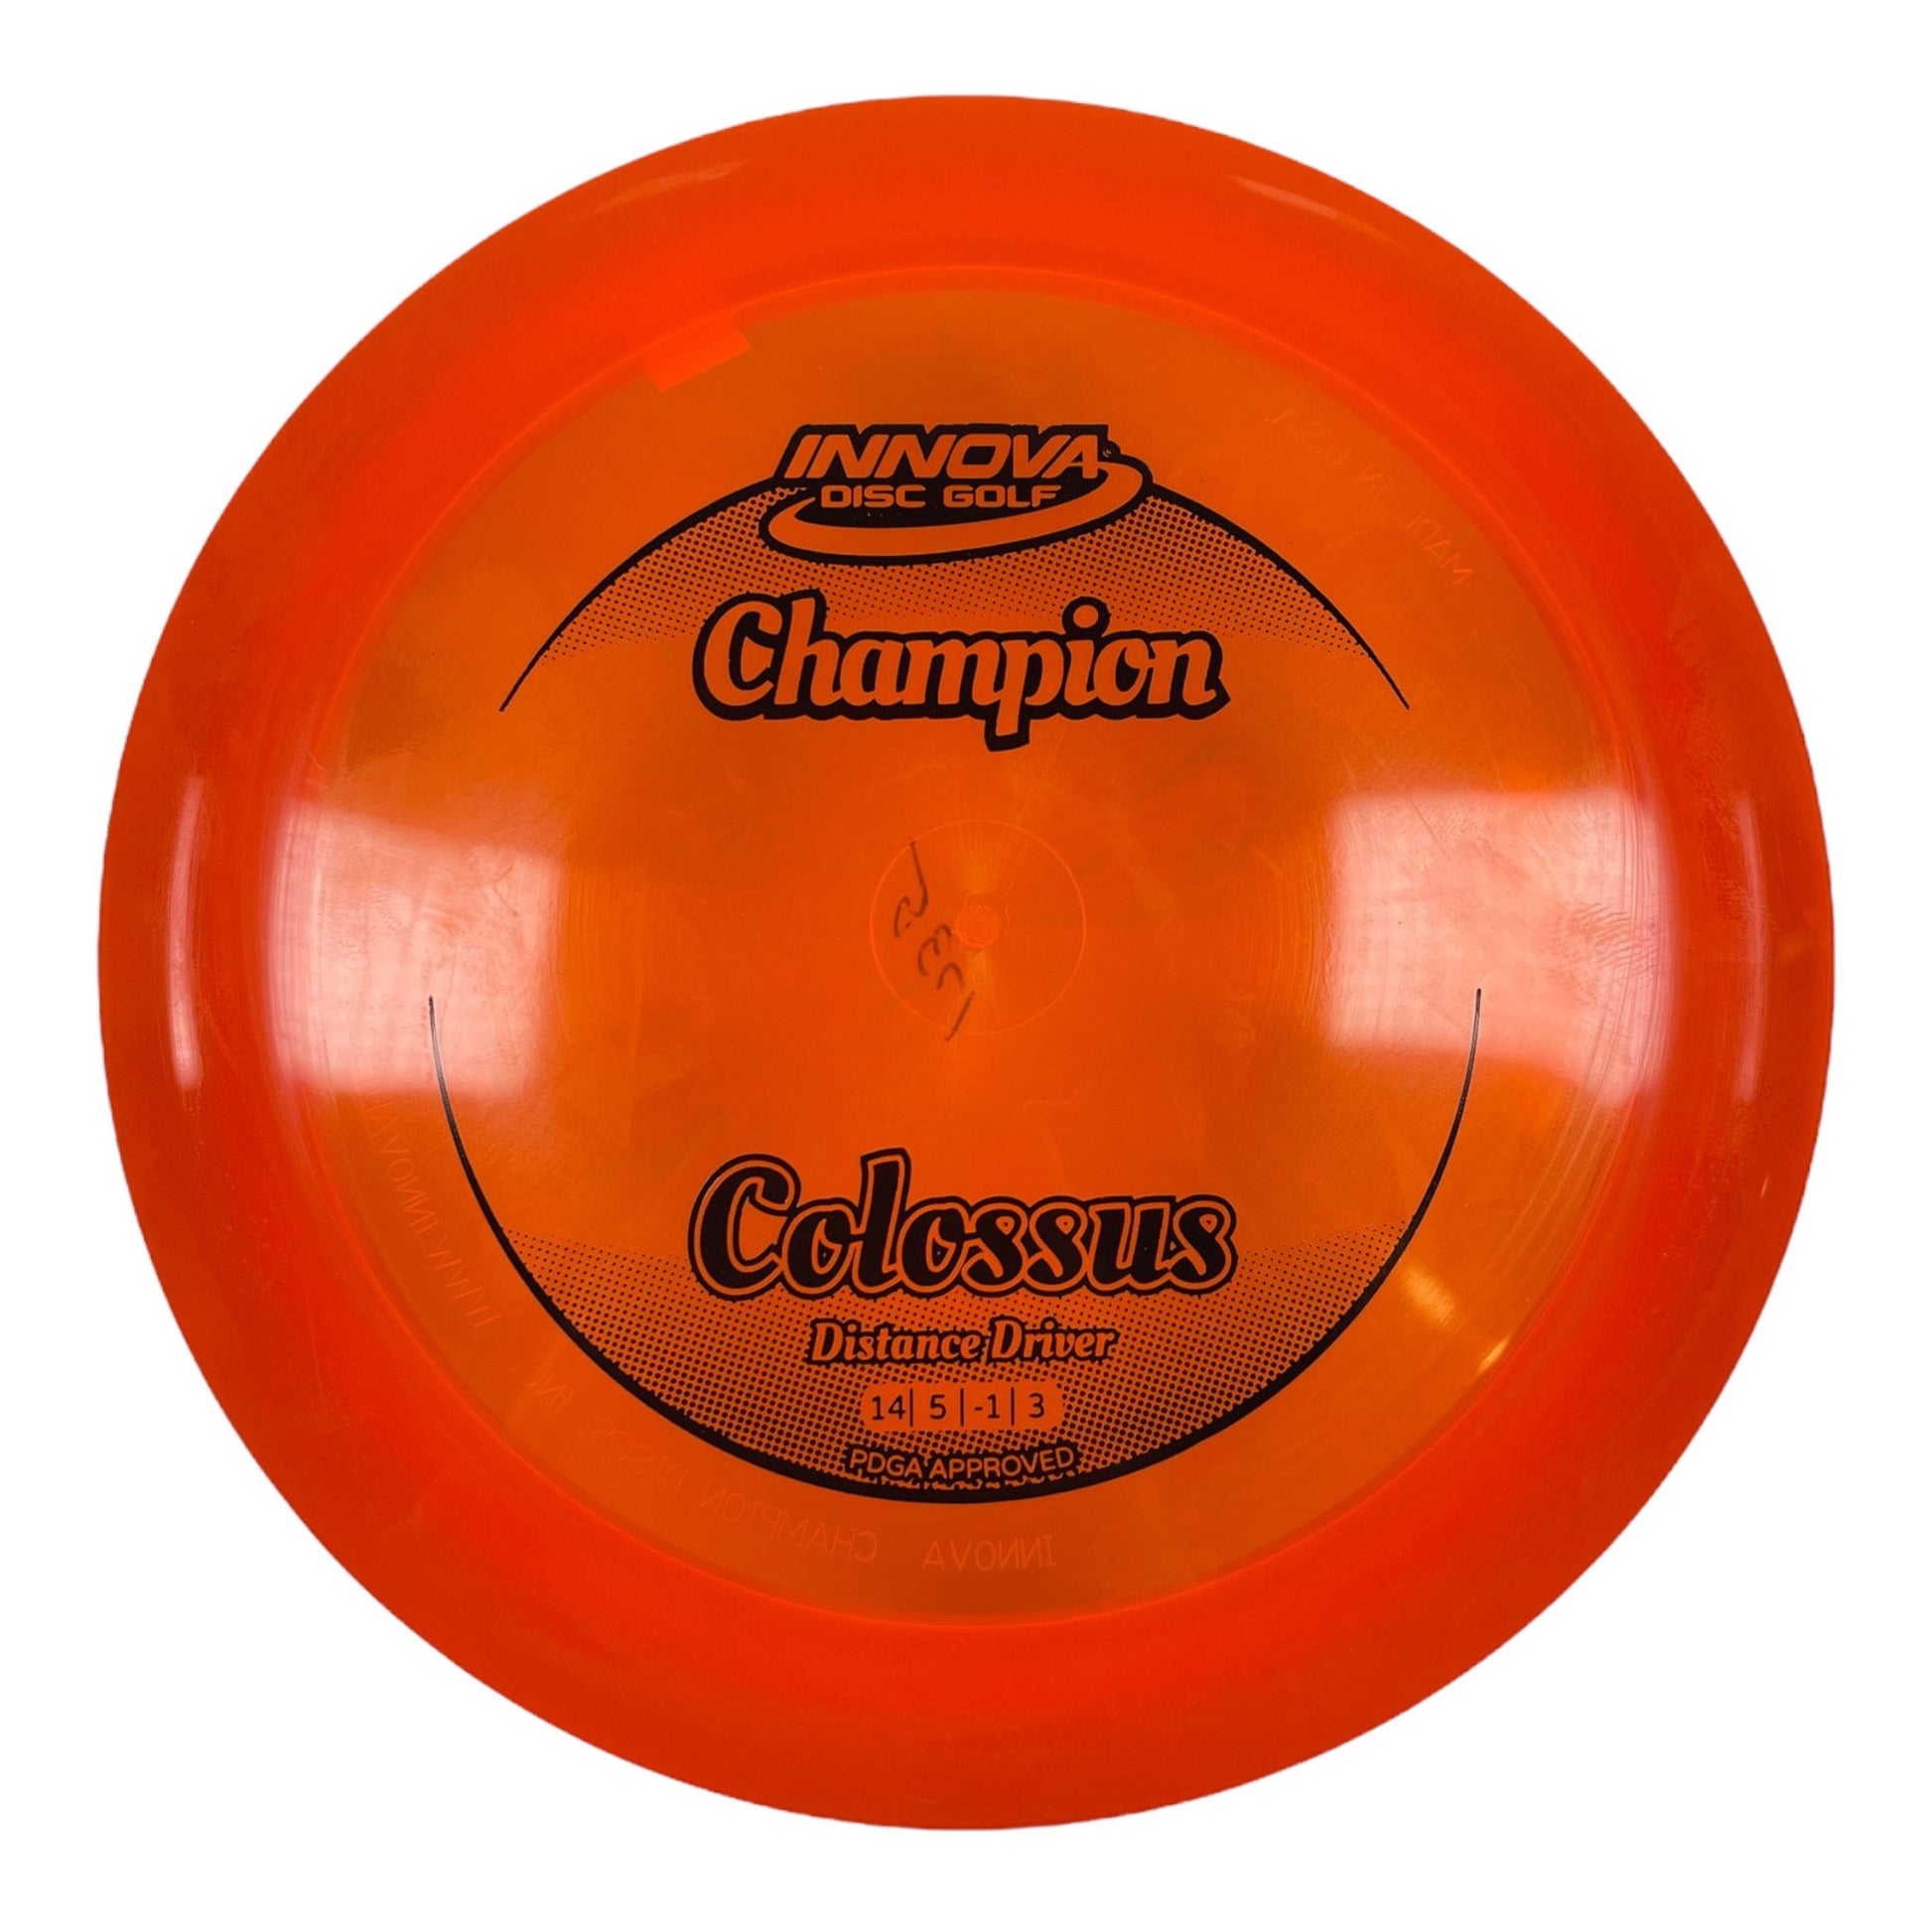 Innova Champion Discs Colossus | Champion | Orange/Black 174g Disc Golf